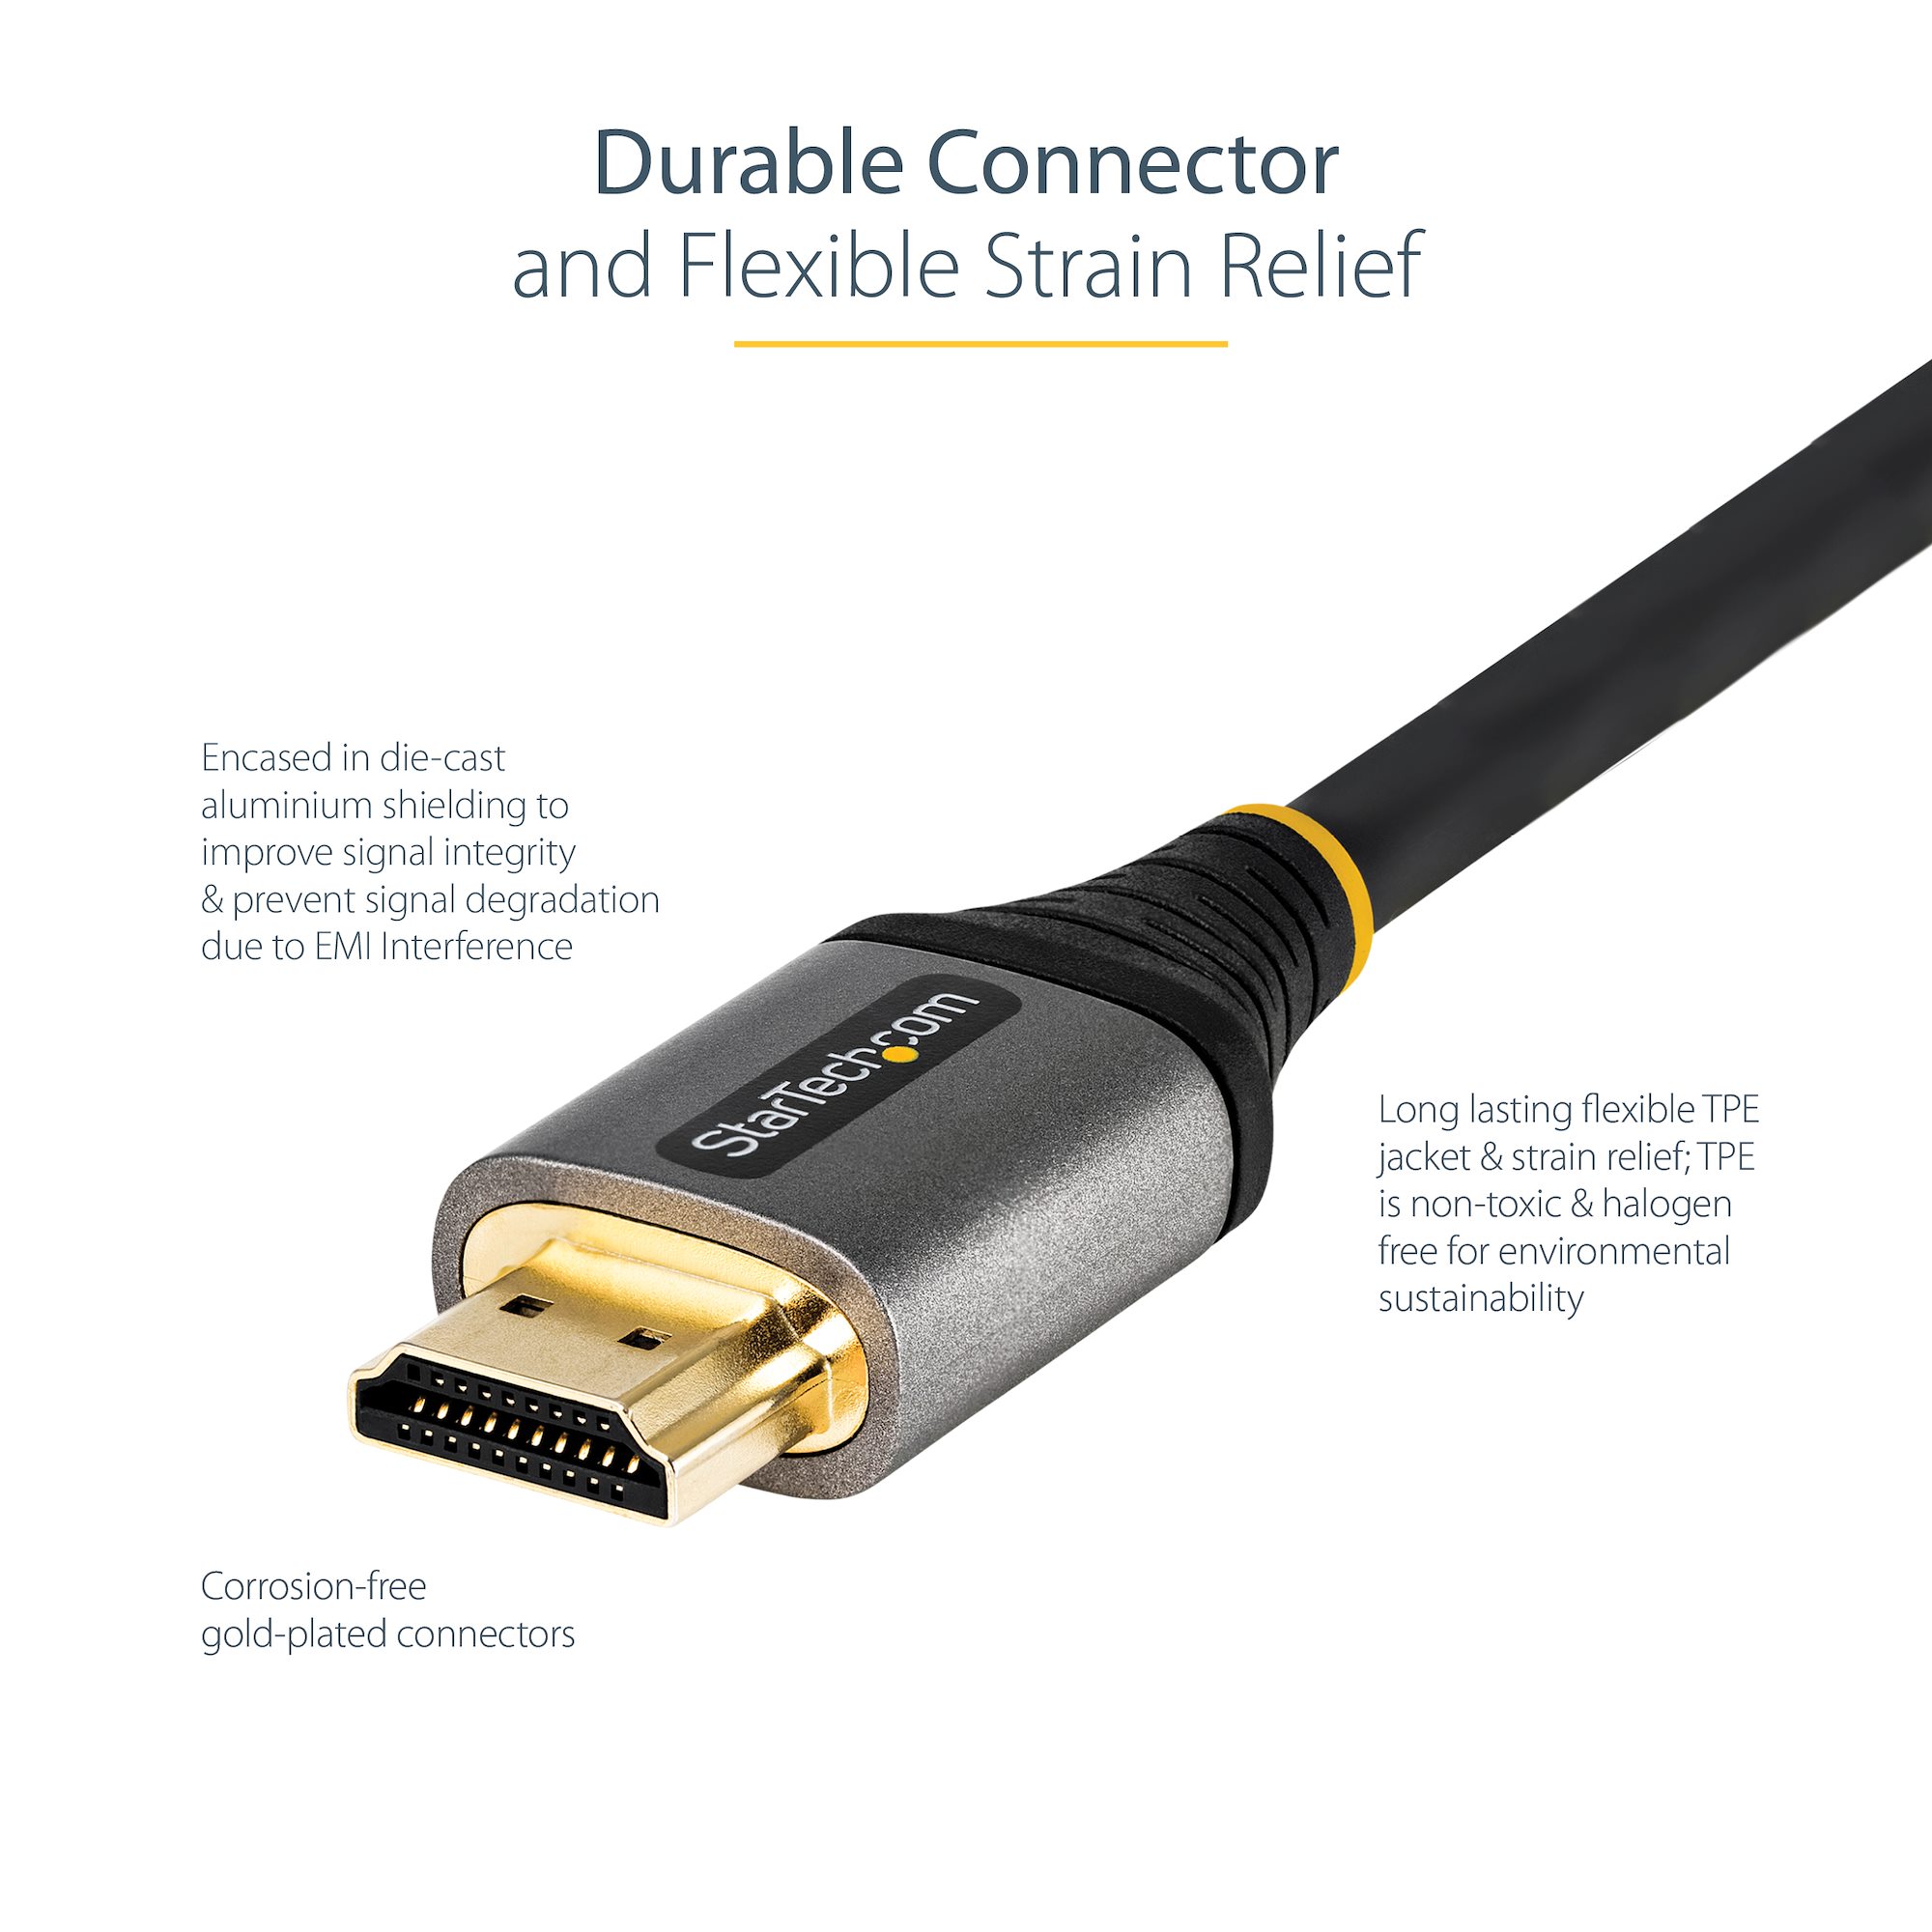 3 câbles HDMI compatible 4K, 3D & Full HD, HEC, noir – 10 m